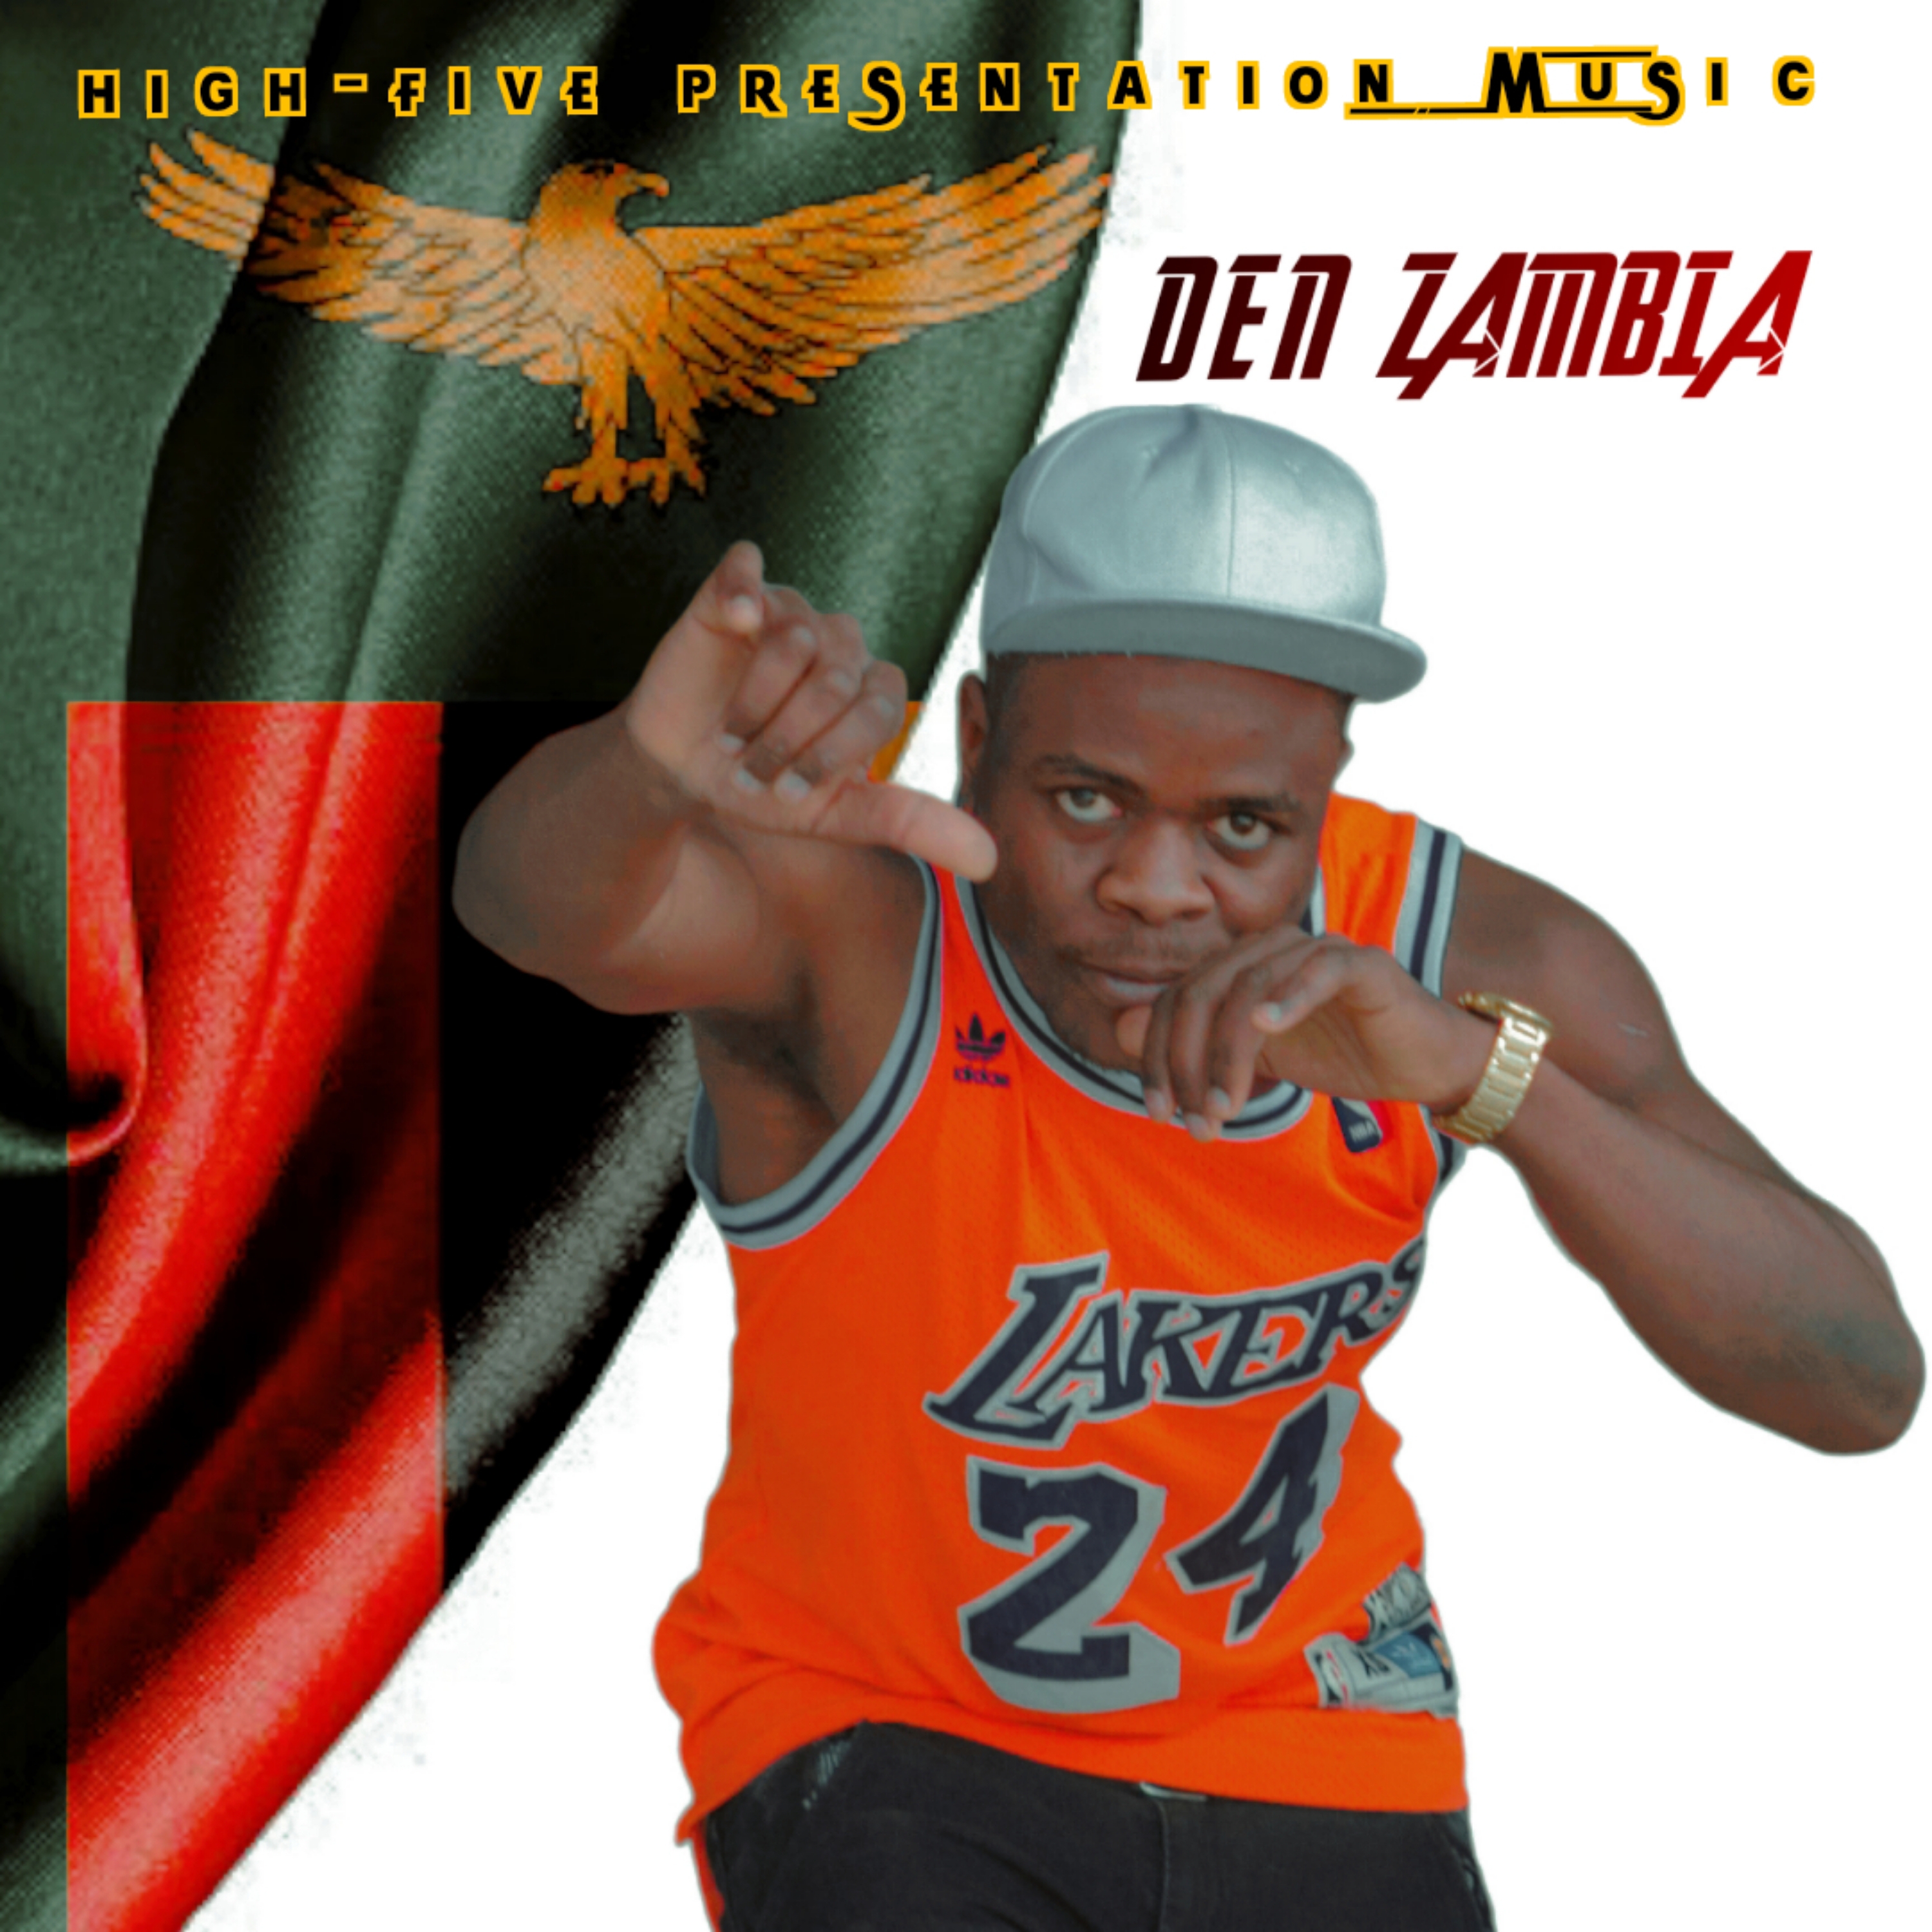 DEN Zambia